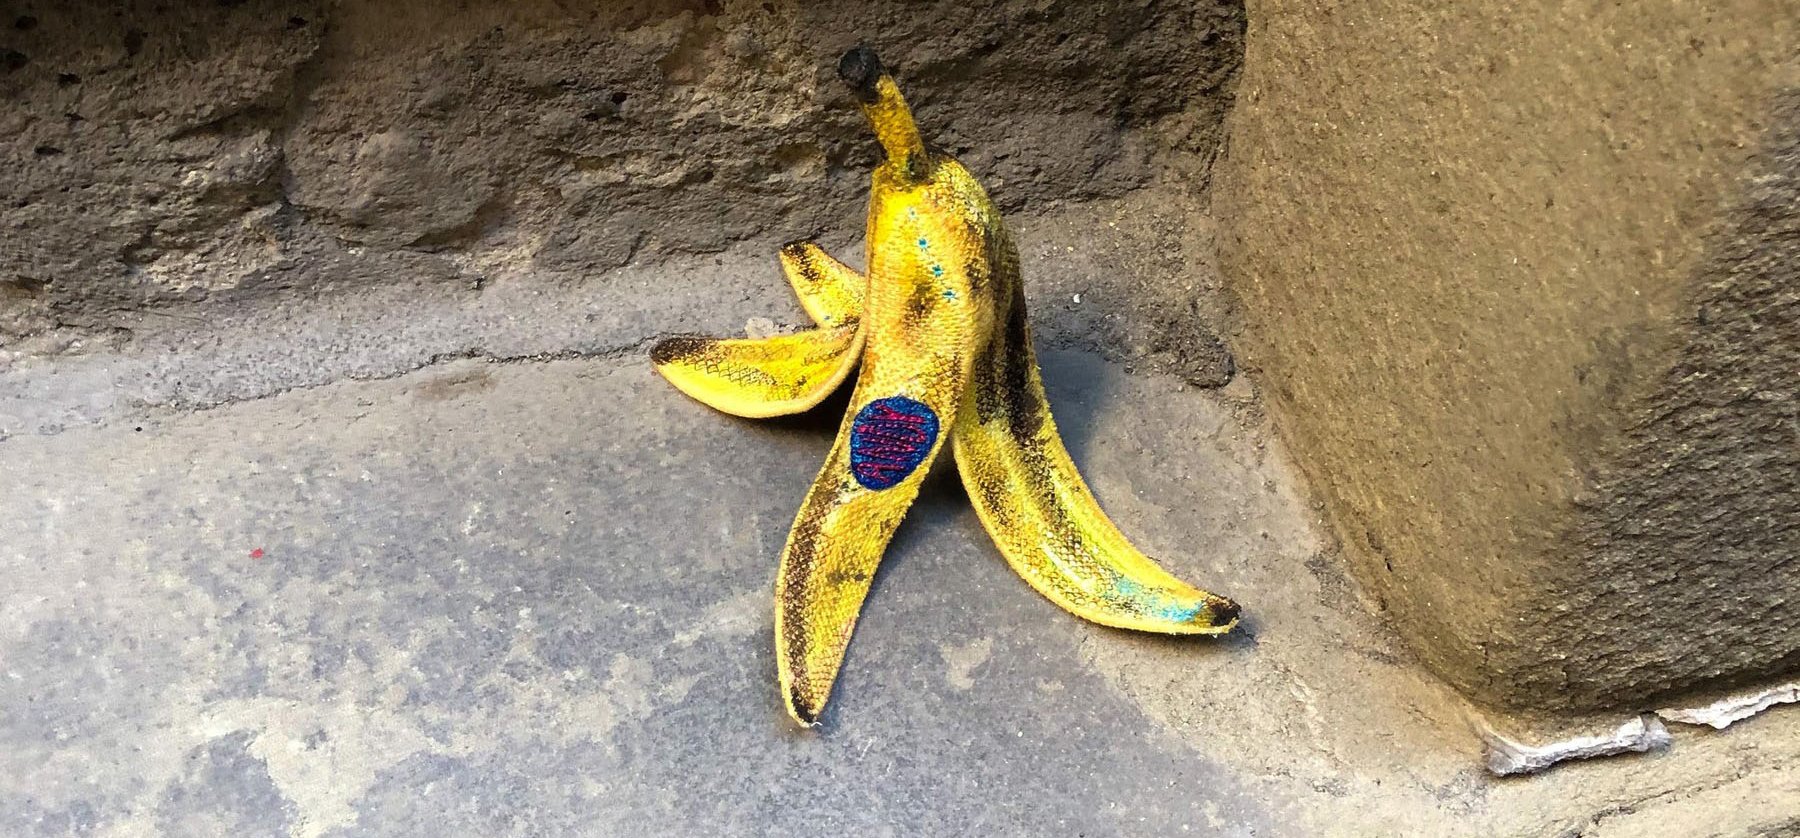 Valami nem stimmel ezzel a „banánnal”, igaz? – Az egész internetet ámulatba ejtették egy lengyel művész alkotásai!